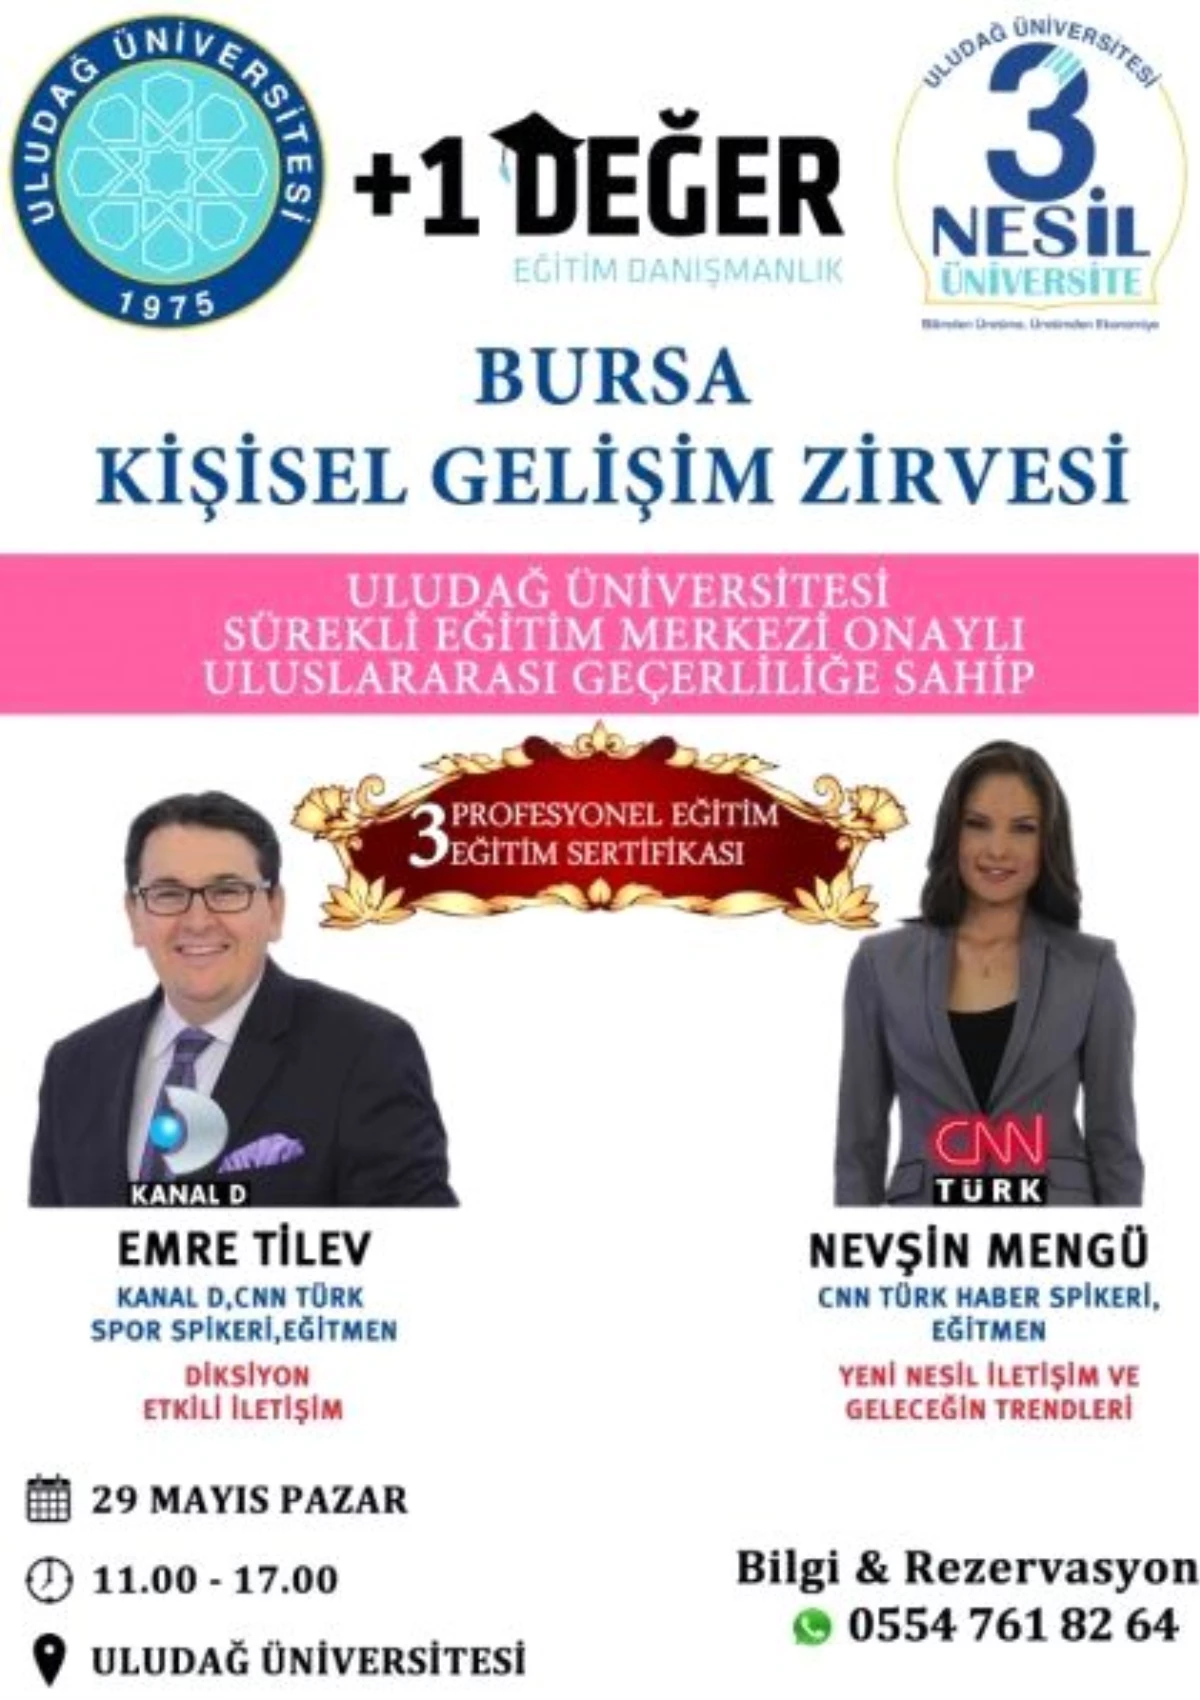 Bursa Kişisel Gelişim Zirvesi Uludağ Üniversitesi Onaylı 3 Sertifika